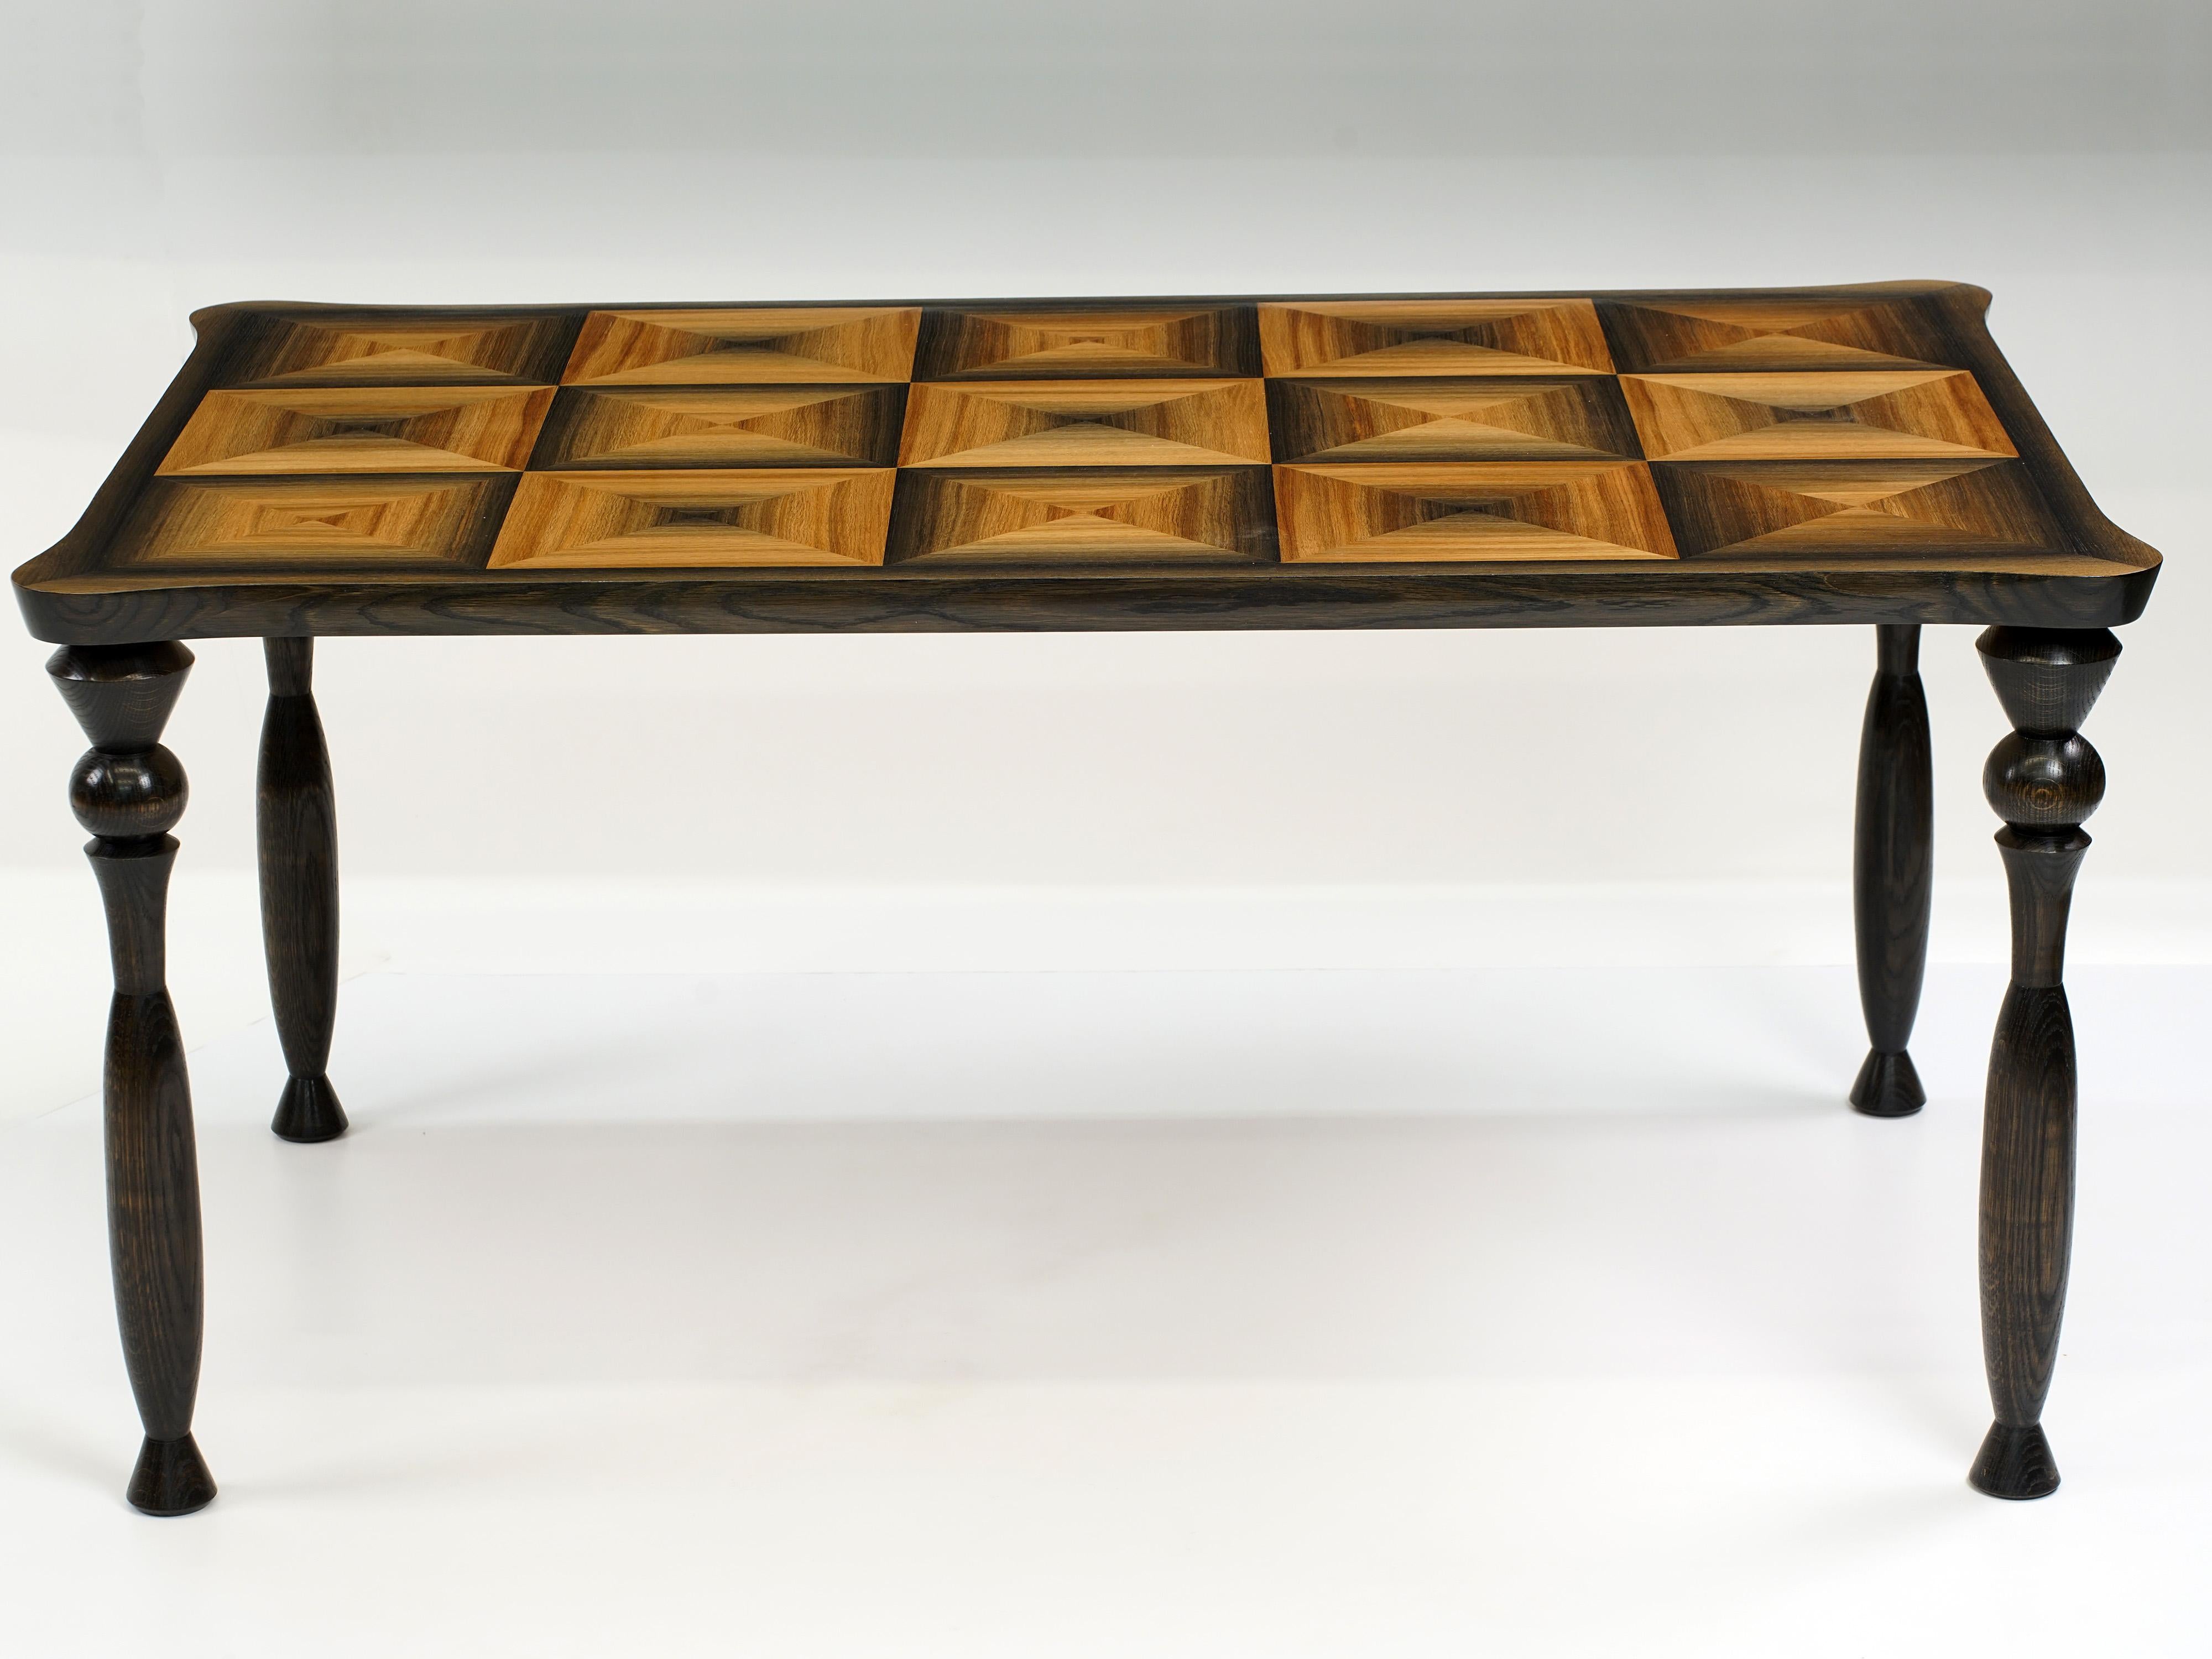 Un plateau de table est l'occasion de mettre en valeur la beauté de n'importe quel matériau 
dont il est fait, et cette pièce ne déçoit pas. La frappe 
beauté d'un chêne marécageux vieux de 1200 ans, scié en placages épais et disposé dans une 
le